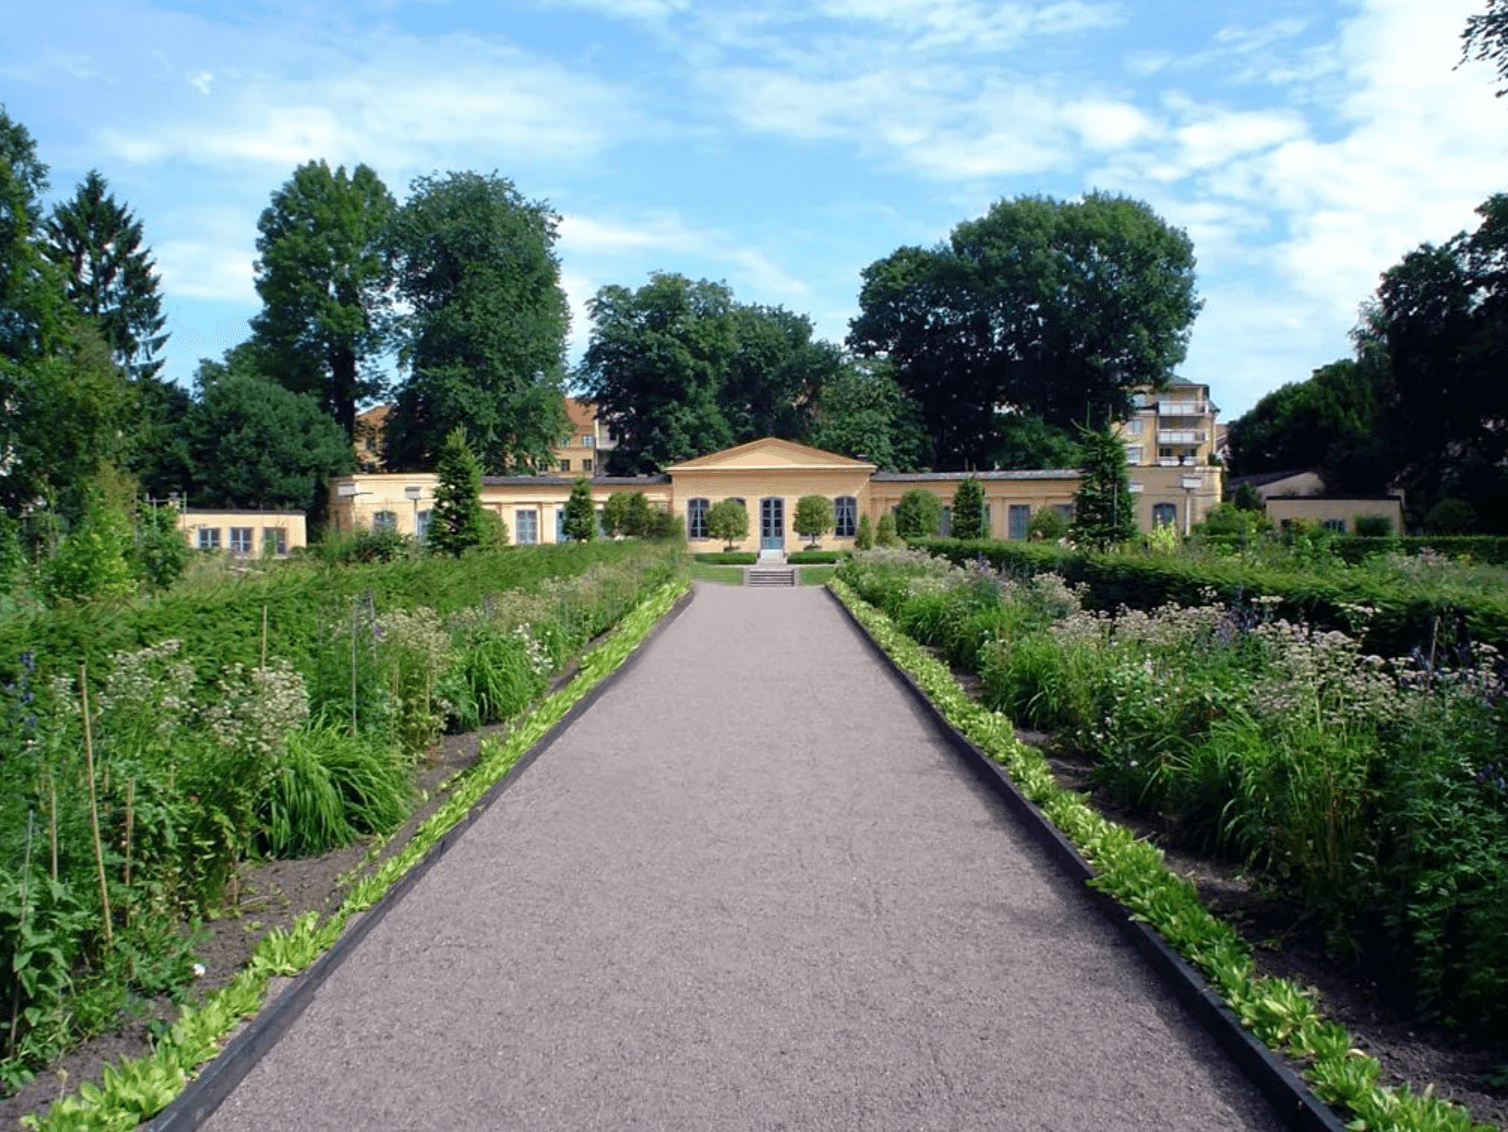 Bjud in till fest i Linnéträdgården i Uppsala, Sveriges äldsta botaniska trädgård